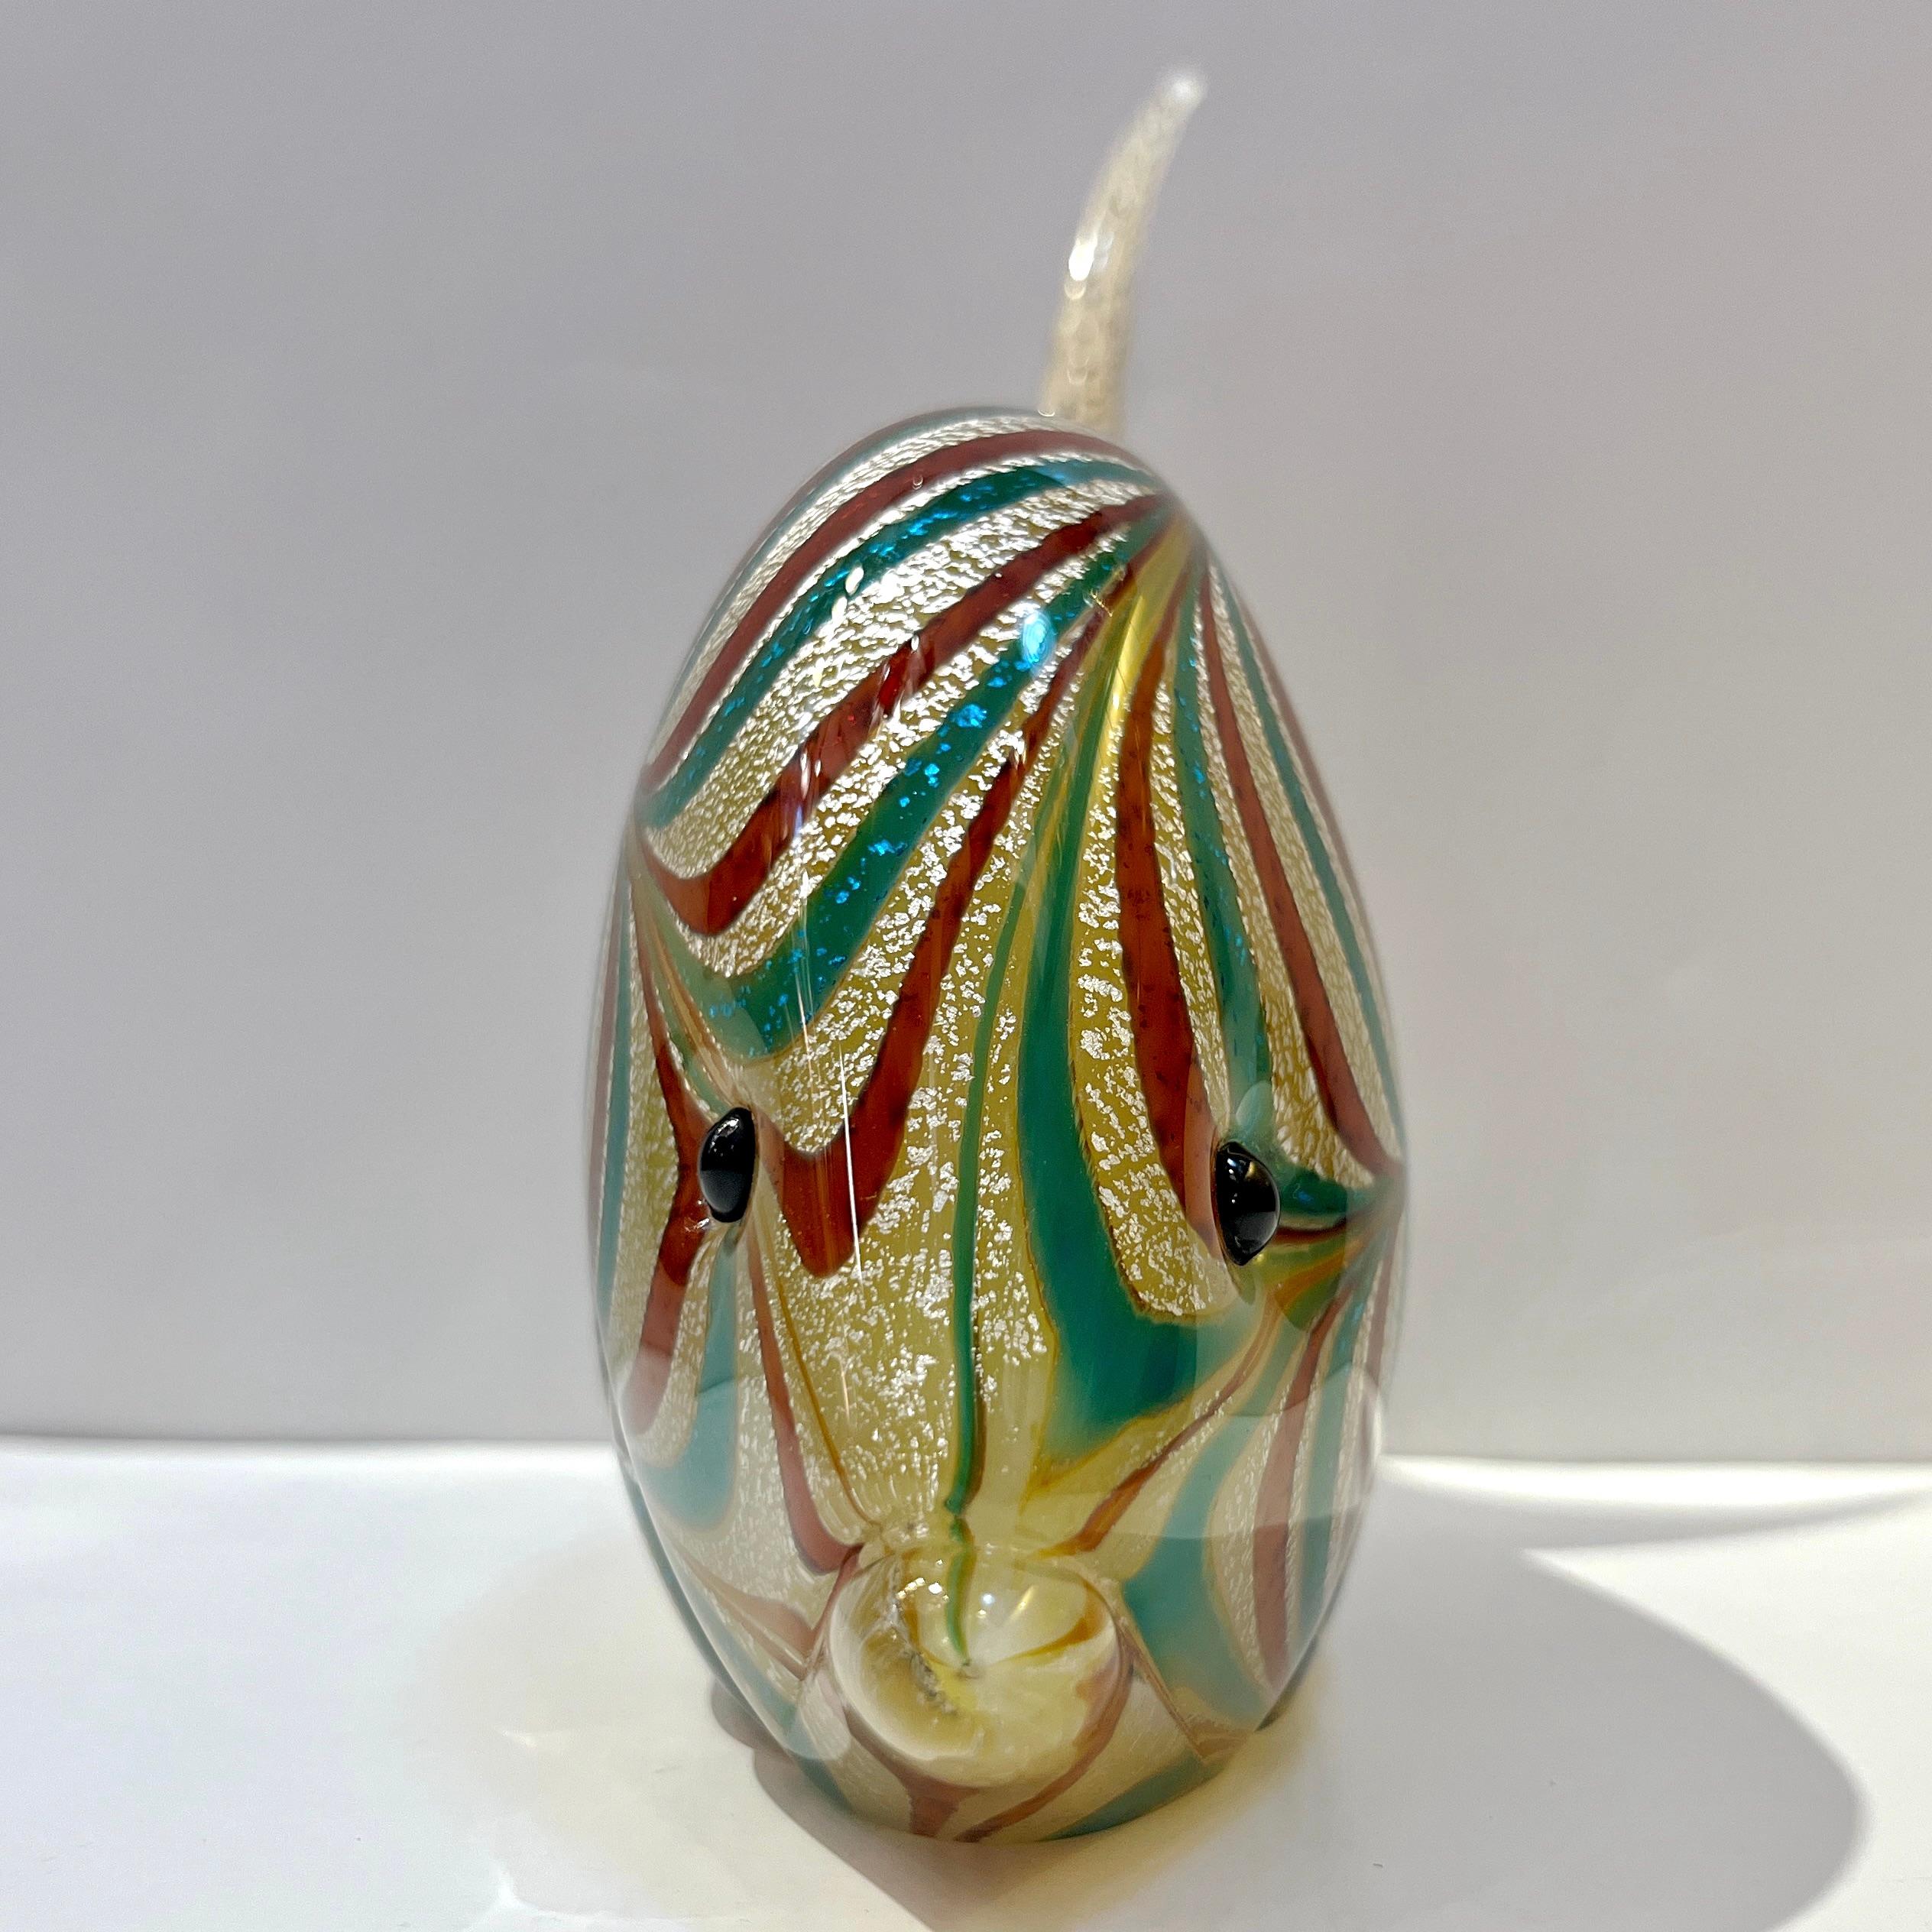 Italienischer skulpturaler Murano-Glasfisch der 1960er-Jahre, der Archimede Seguso zugeschrieben wird, von exquisiter Handwerkskunst. Es wird mit der Sommerso-Technik hergestellt, bei der eine kristallklare Glasschicht über einen bernsteinfarbenen